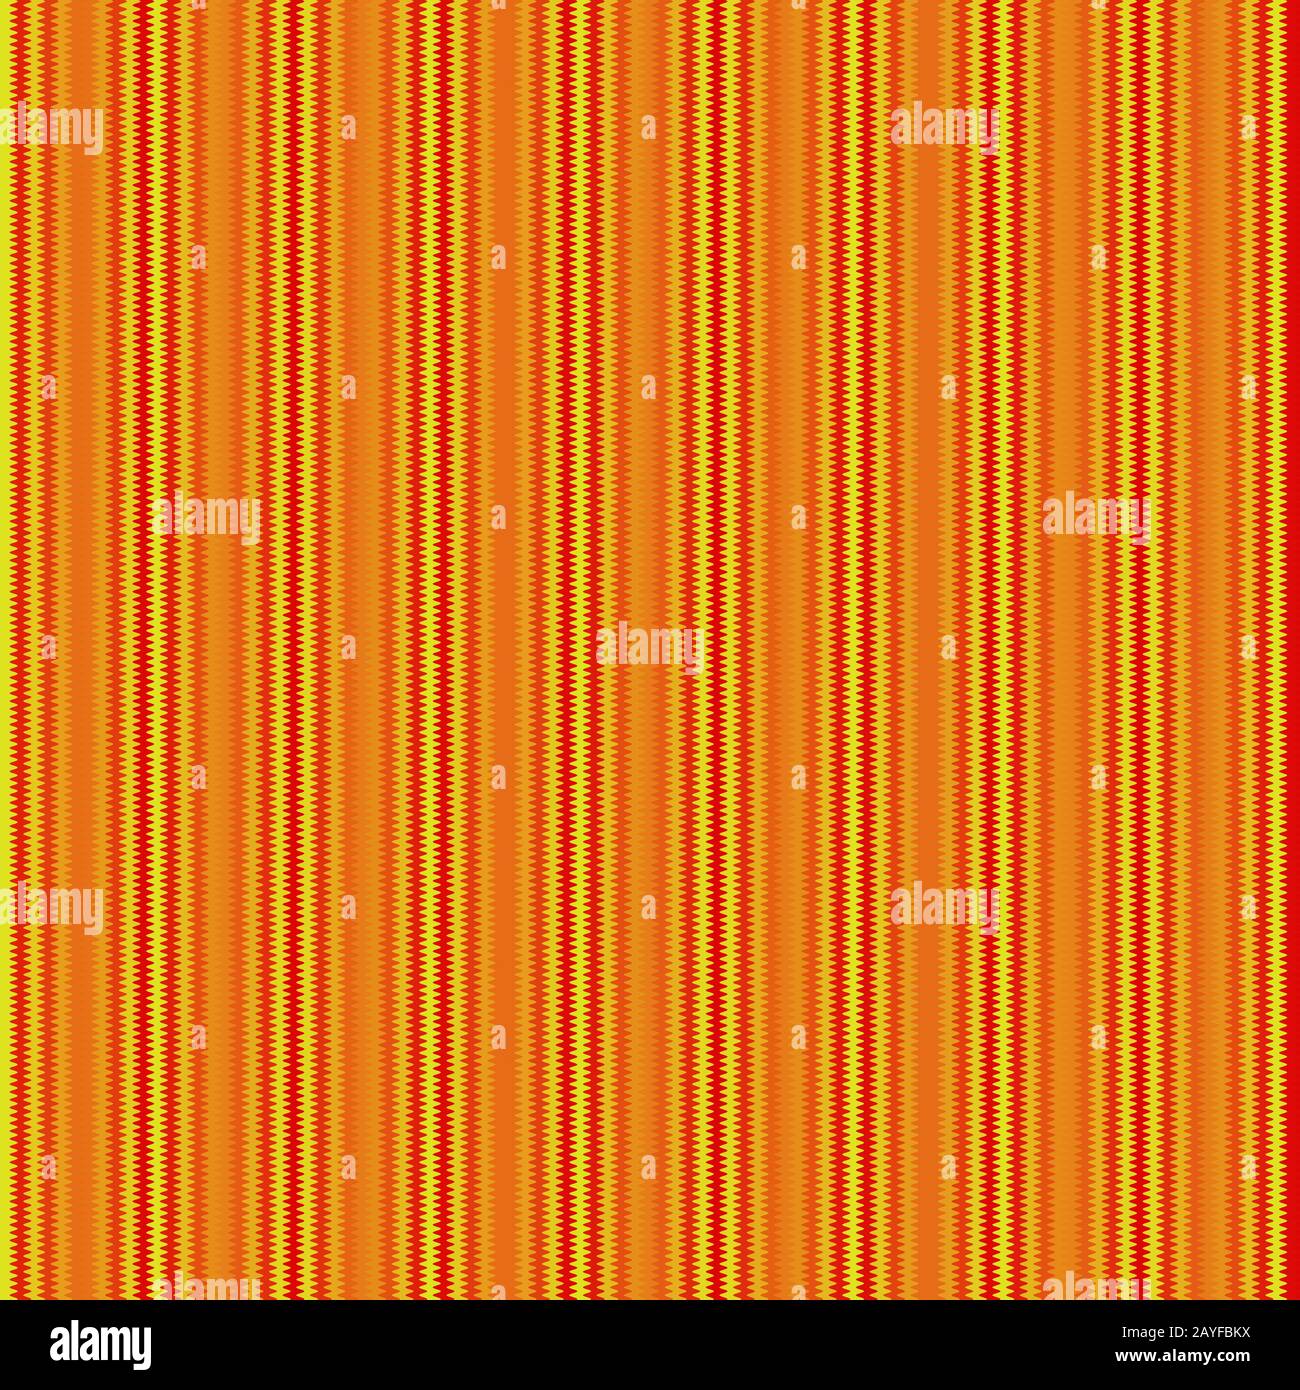 strisce in forma d'onda a zig-zag nei colori giallo e rosso, disposte verticalmente Foto Stock